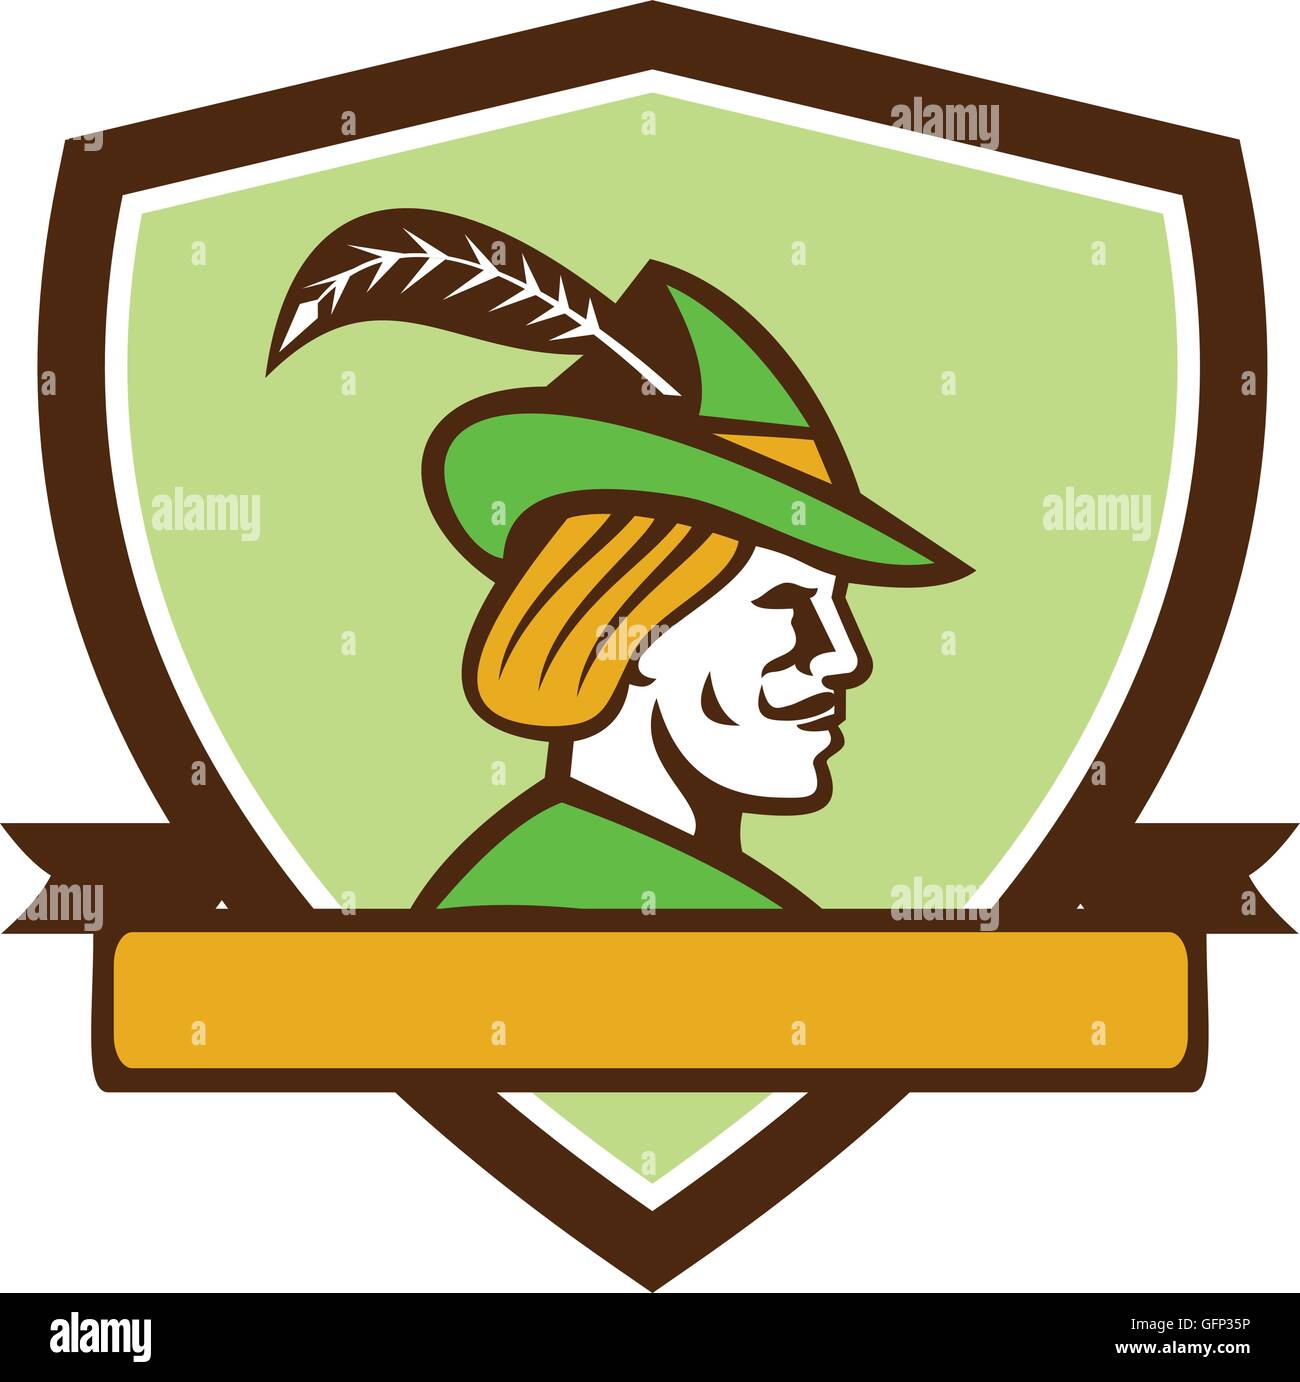 Beispiel für ein Robin Hood Mittelalter Hut mit einem Spitzen Krempe und Feder aus Seite Satz innen Schild Wappen mit betrachtet Stock Vektor